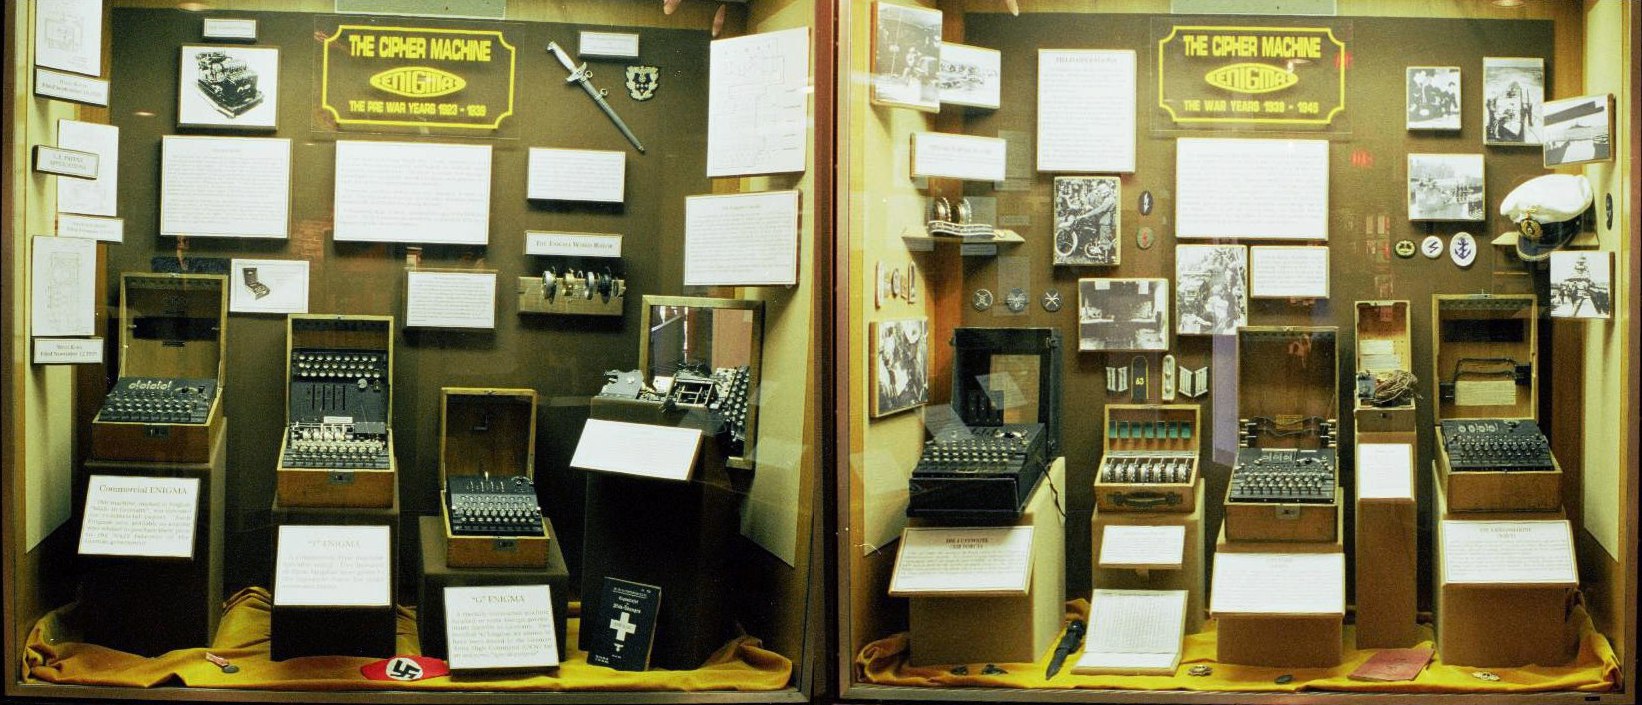 博物馆中收集的密码机.jpg